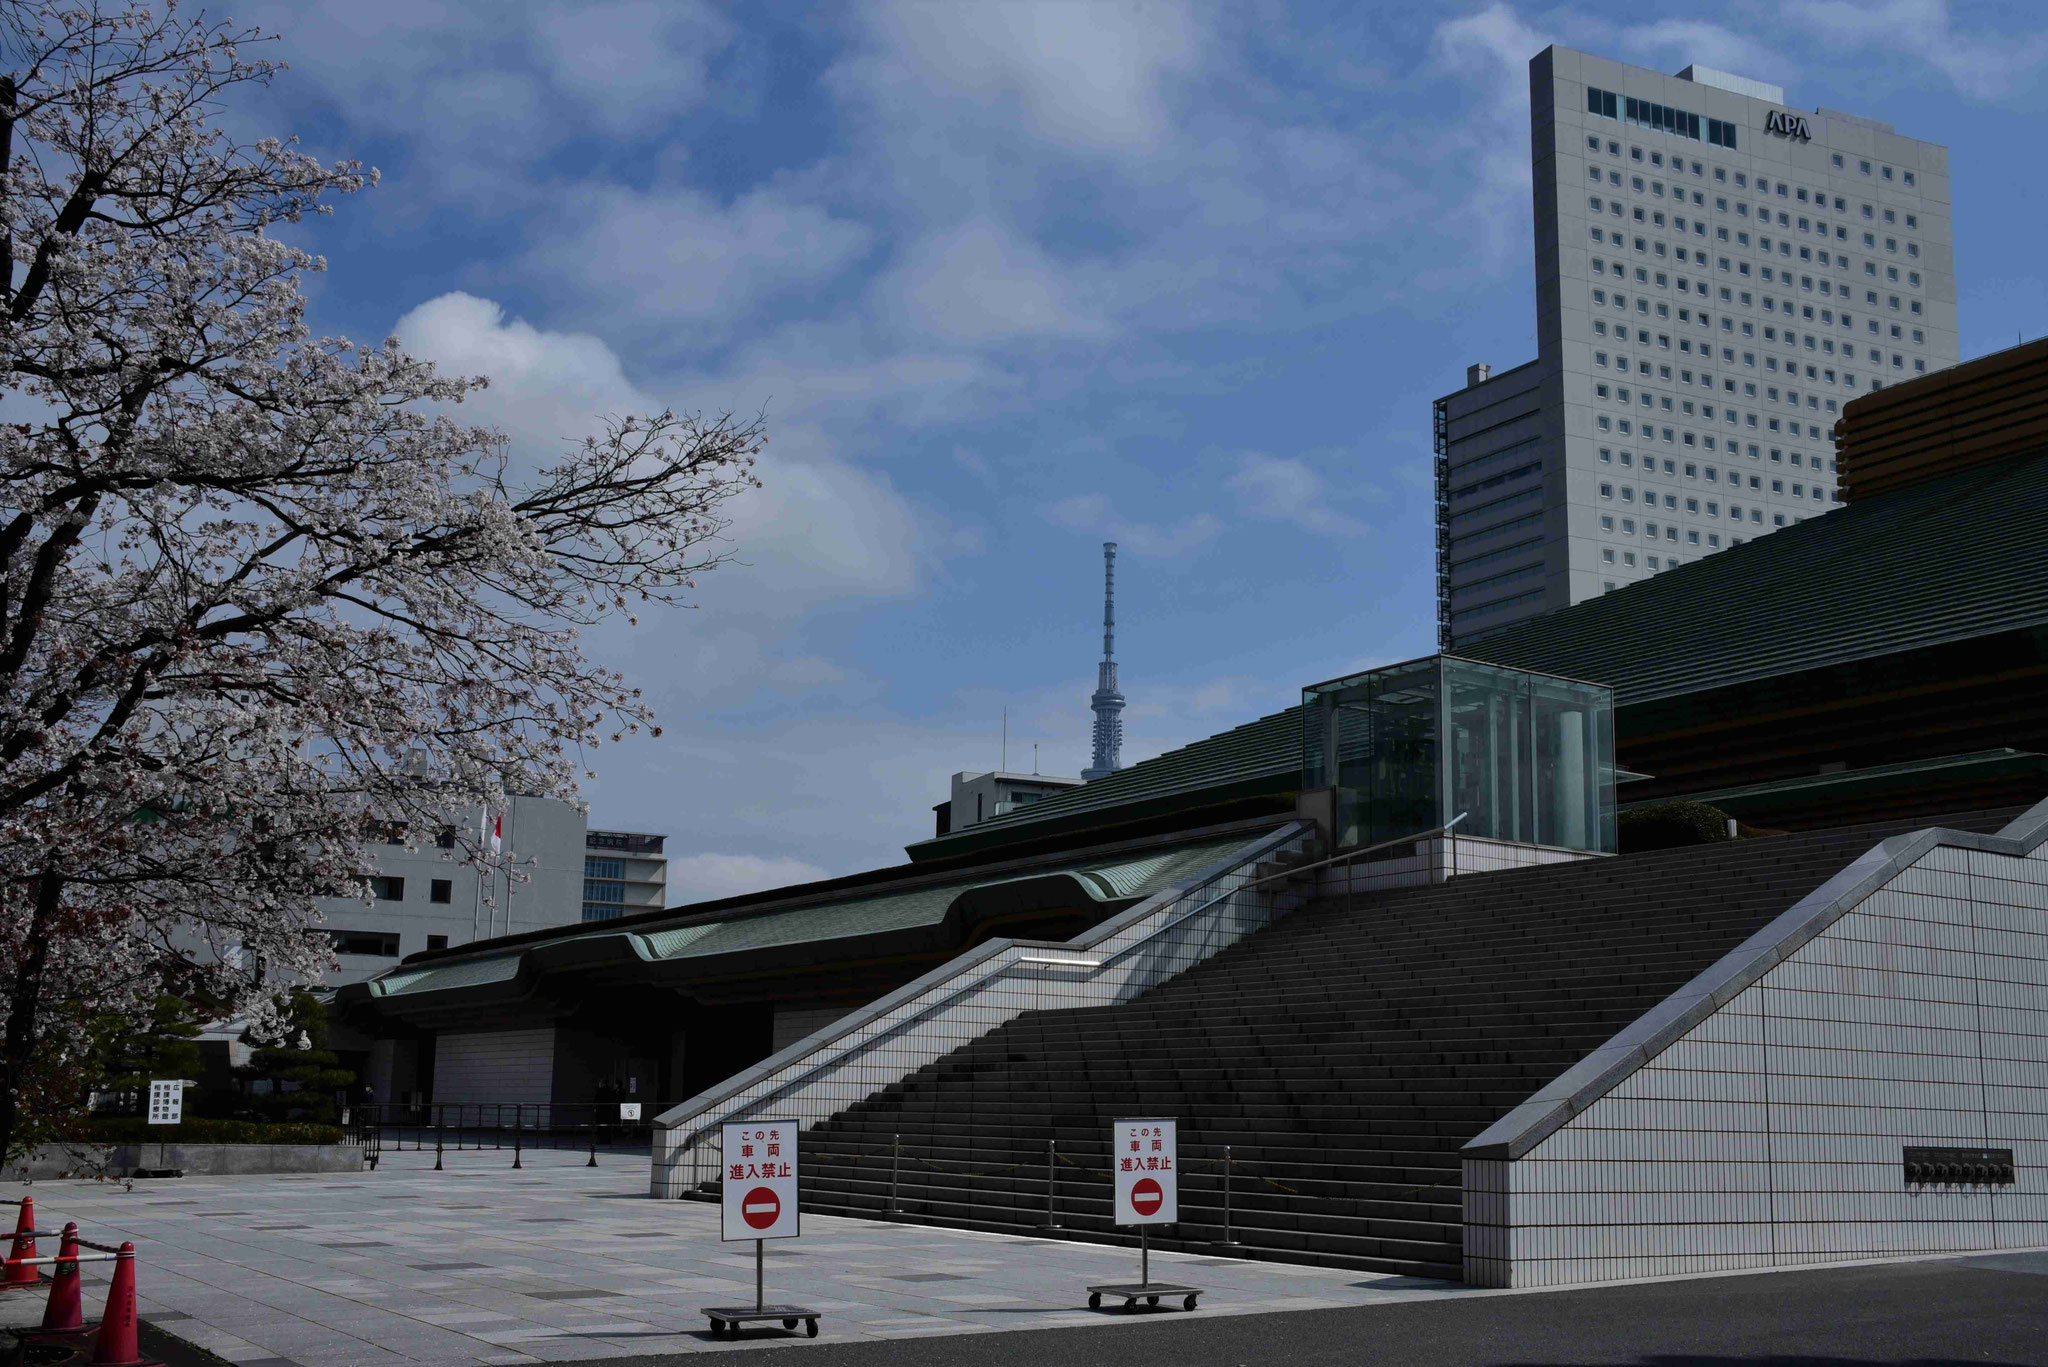 Wettkampfhalle von Tokio - die Hälfte aller Wettkämpfe findet hier statt